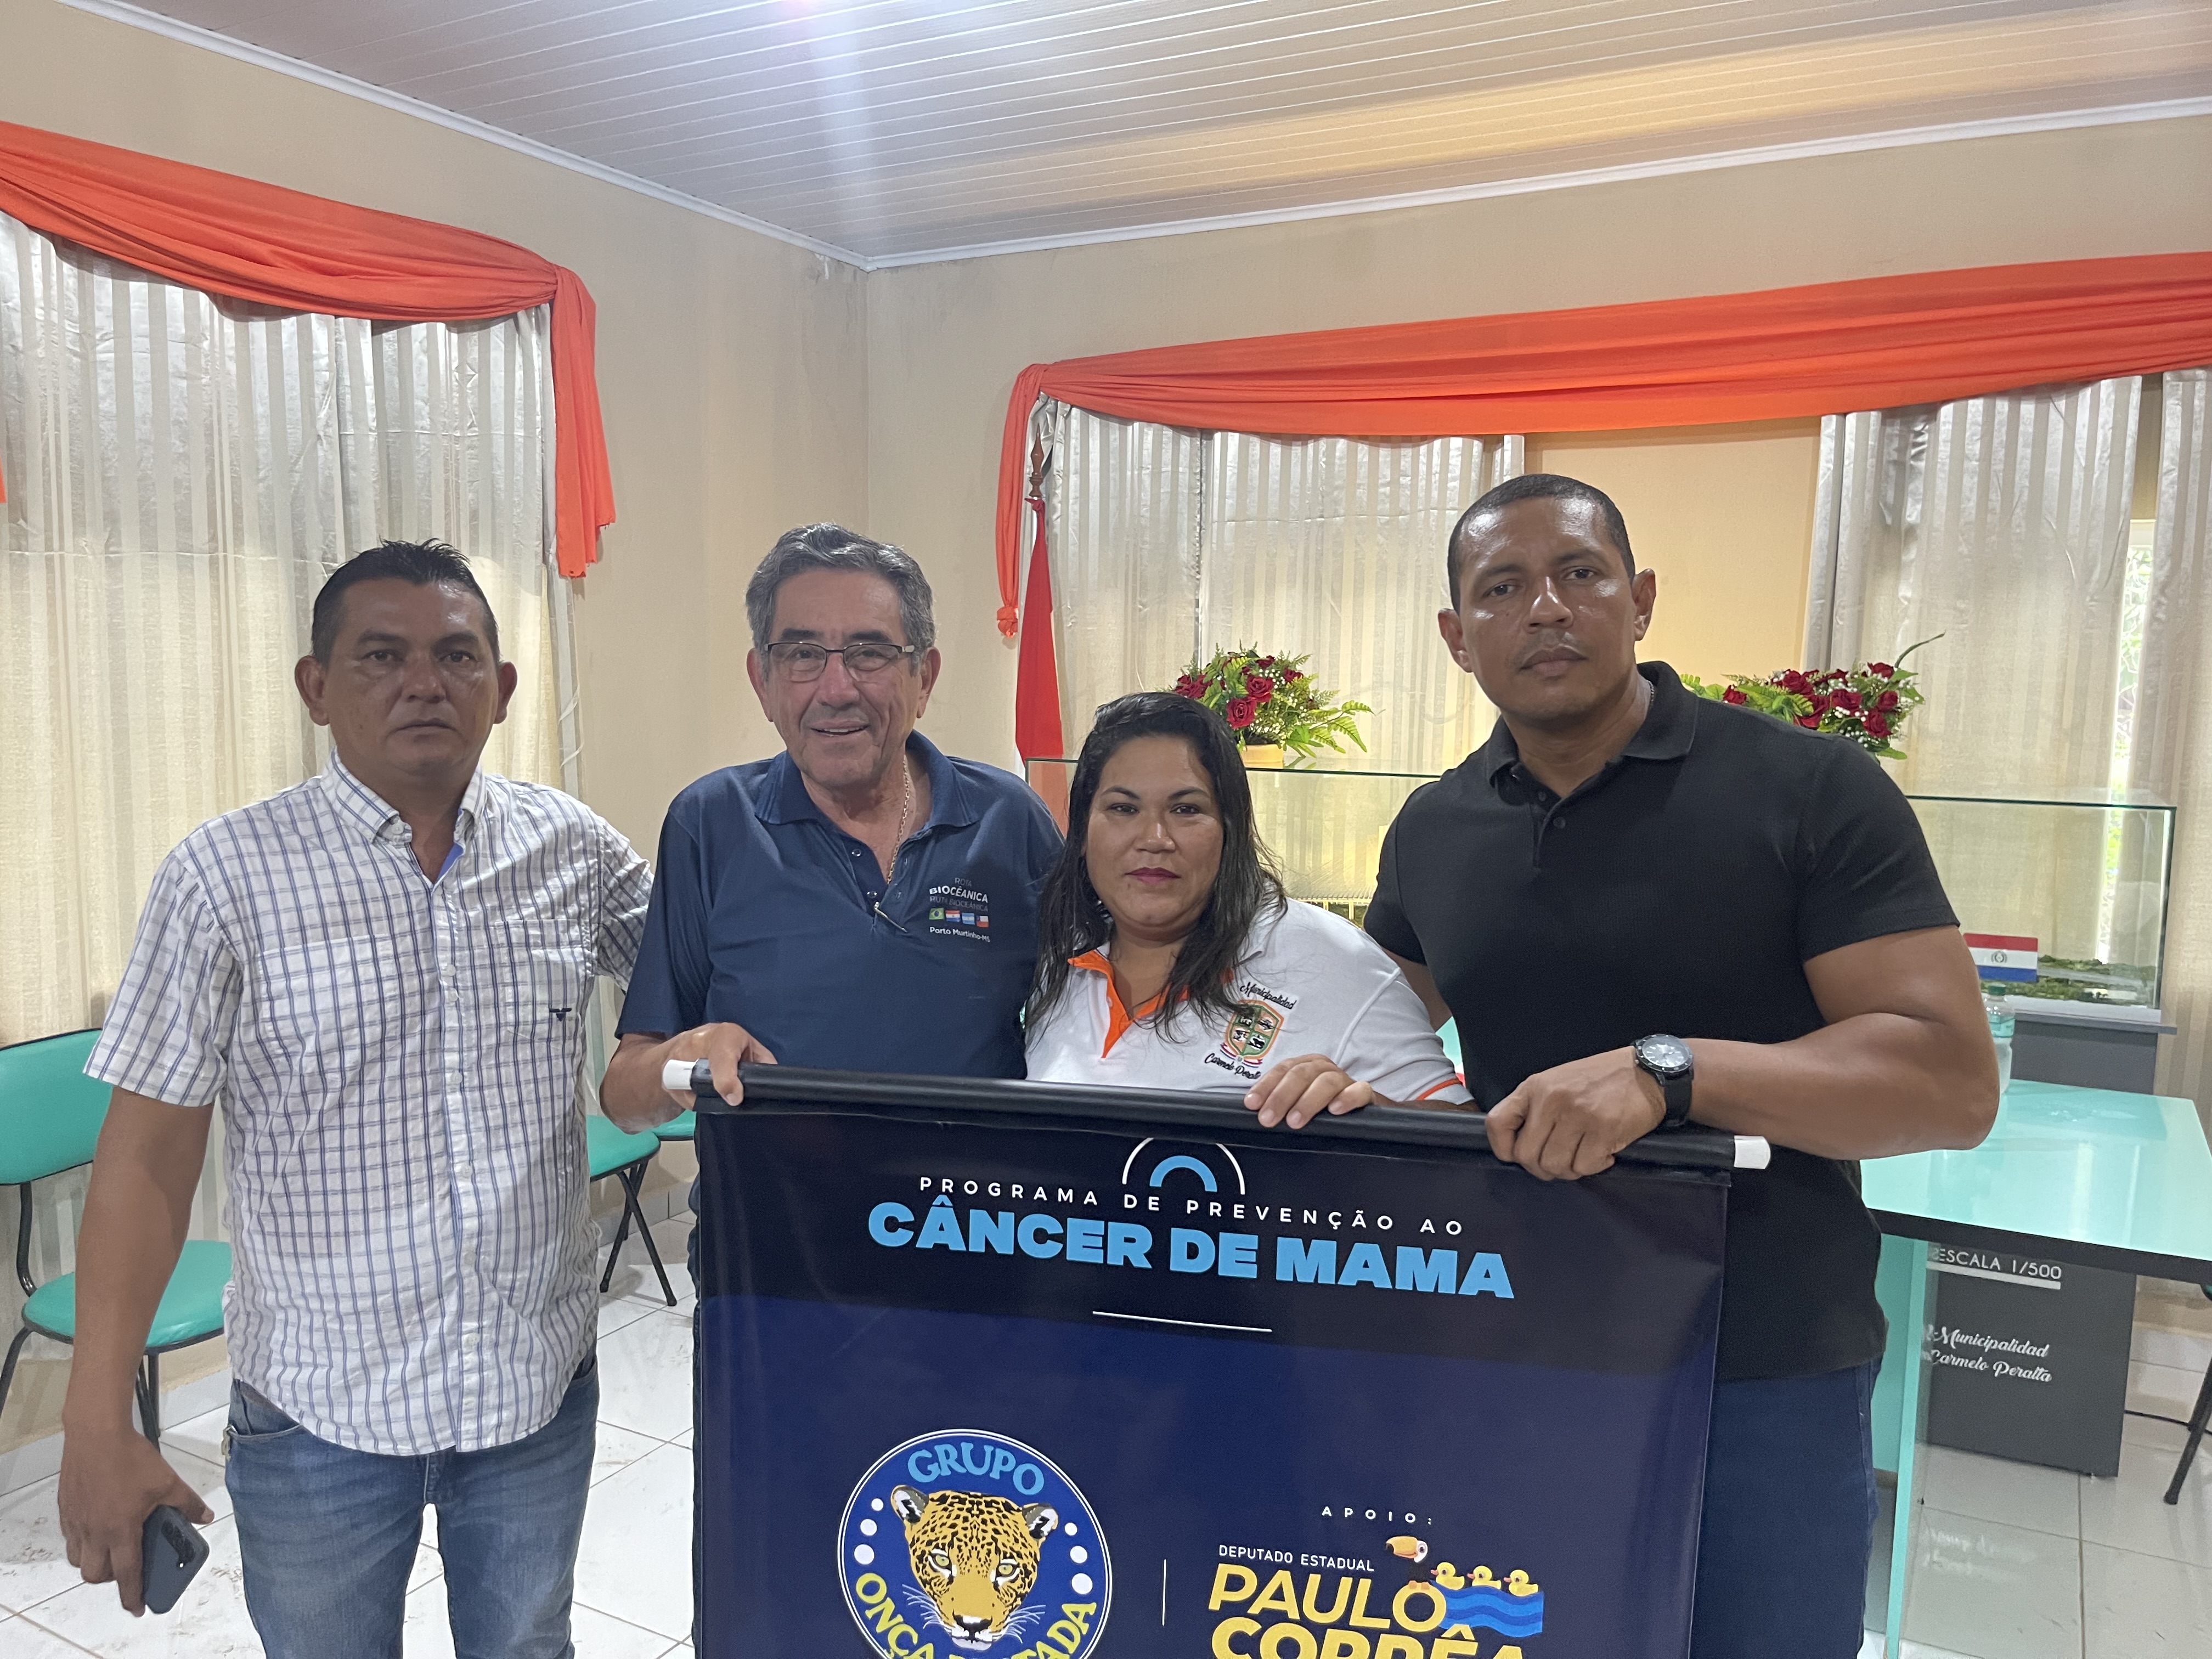 Projeto Onça Pintada do Deputado Estadual Paulo Corrêa chega a Porto Murtinho e Carmelo Peralta para Combate ao Câncer de Mama